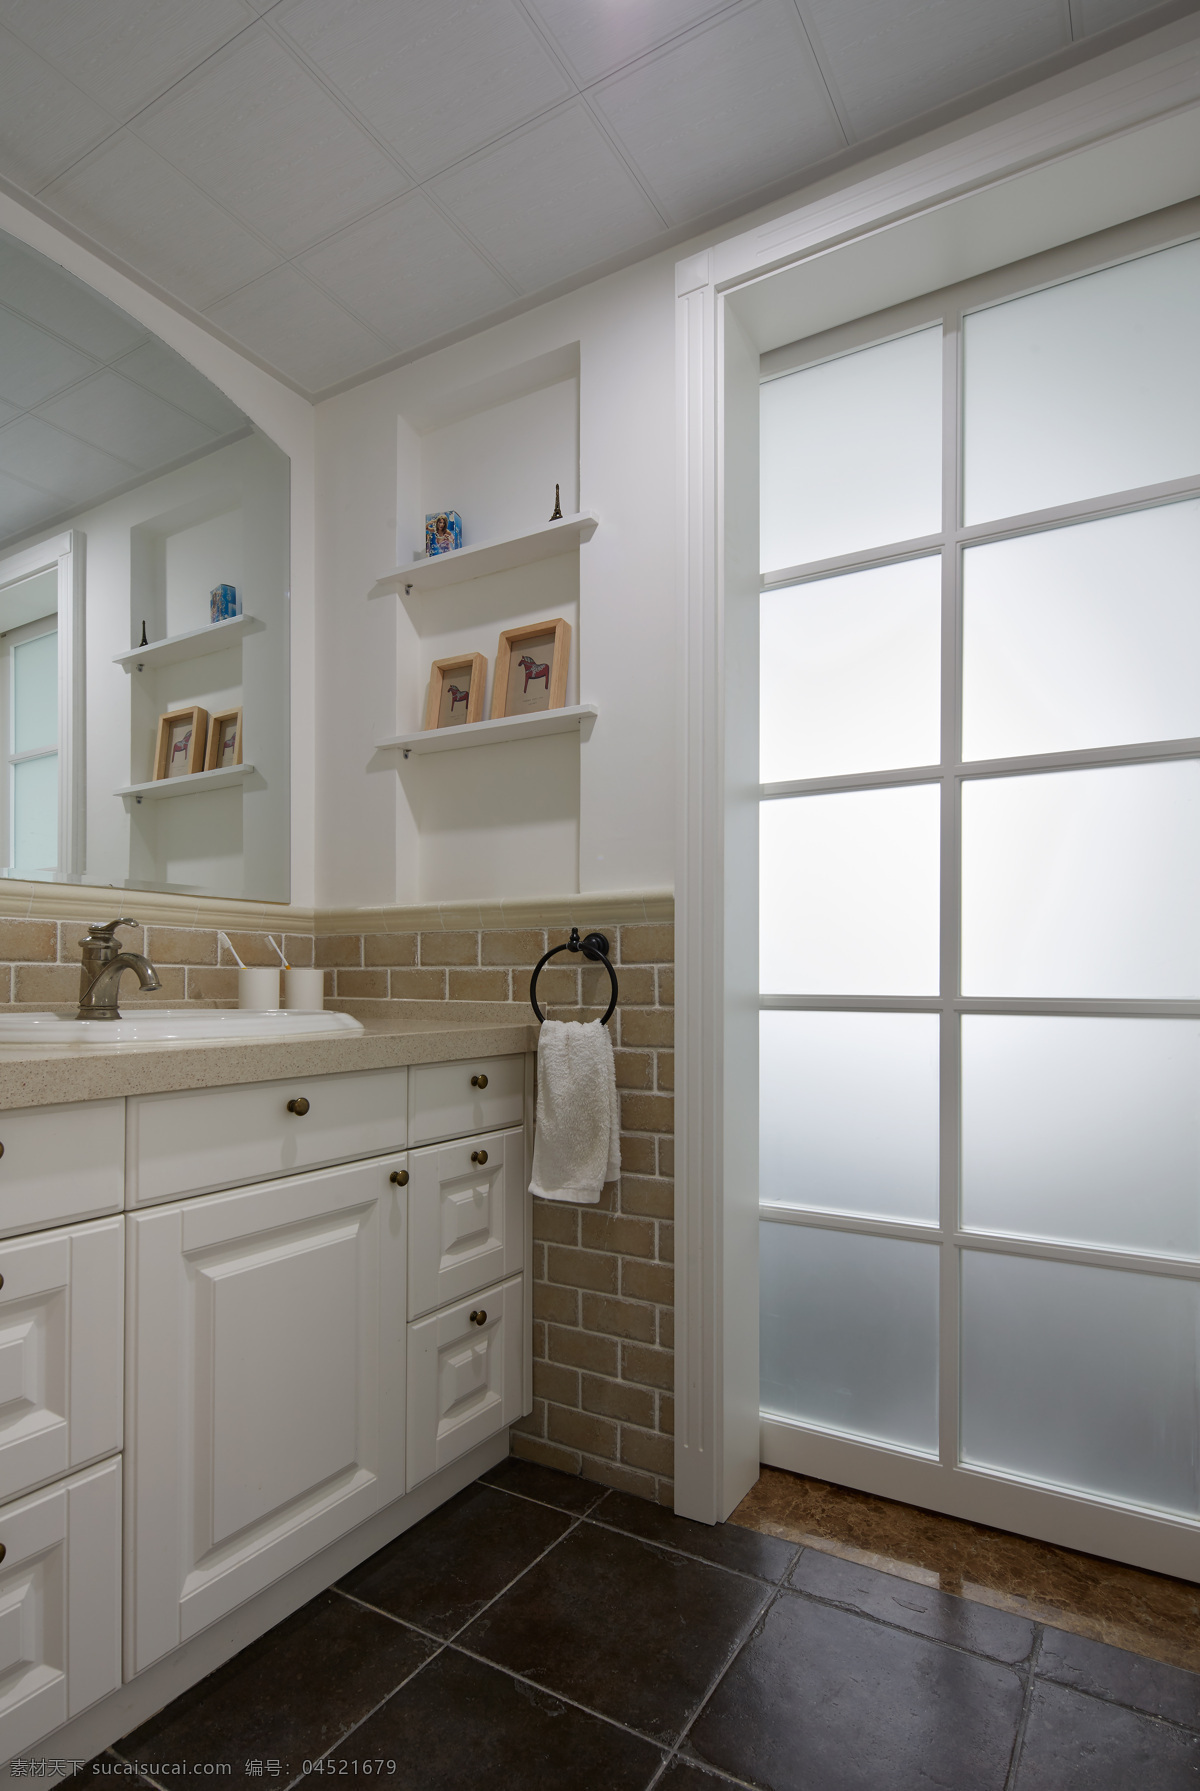 现代 简约 浴室 玻璃 移门 装修 效果图 简欧风格 玻璃移门装修 高清大图